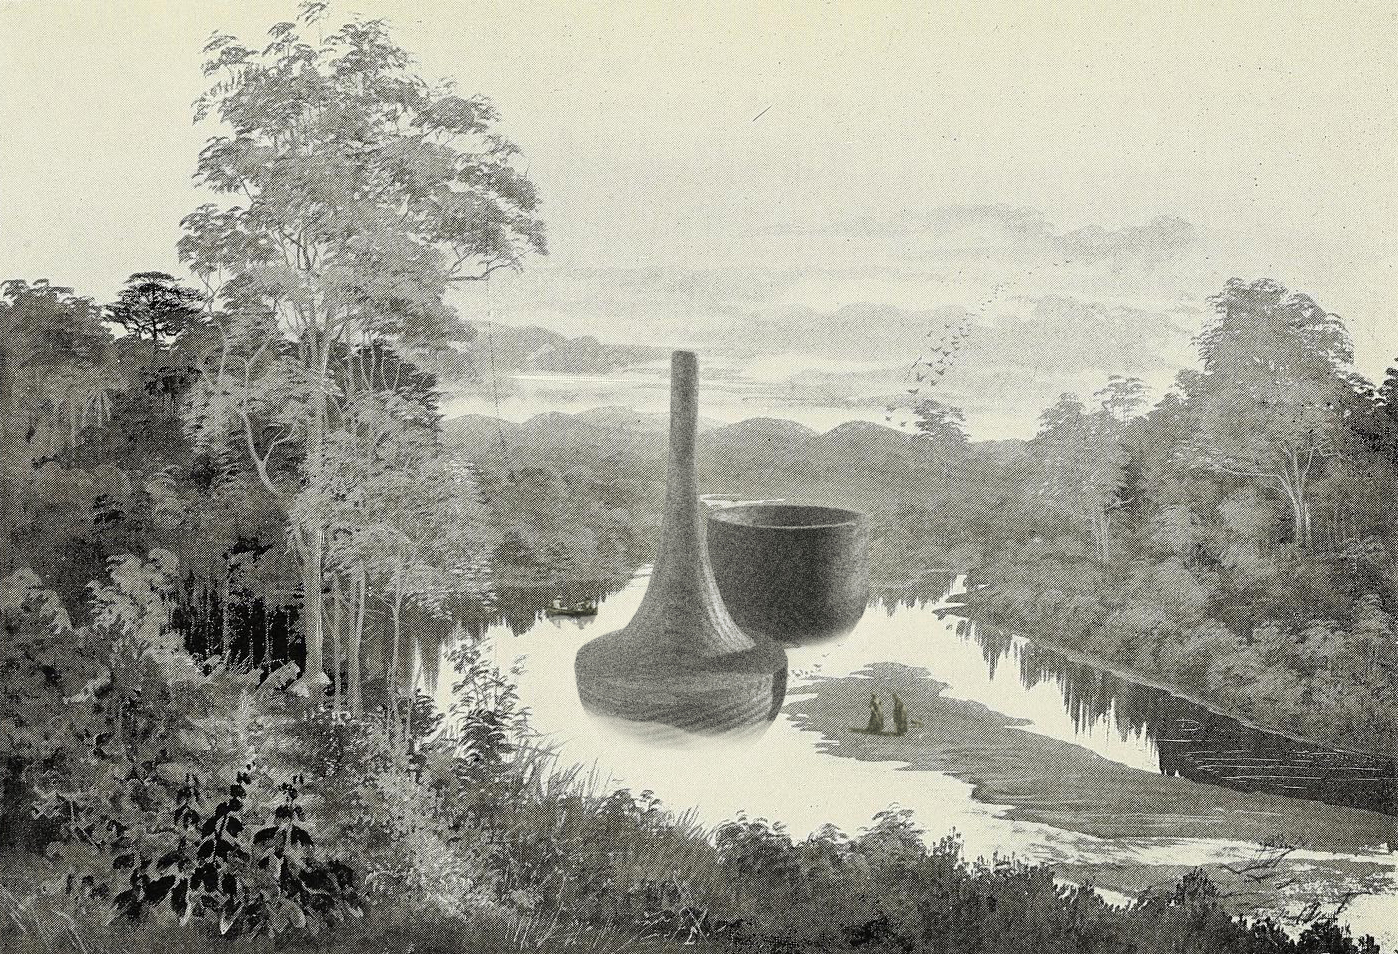 Arka na wzór warszawskiego Wodozbioru oraz Arka wieża-komin wkomponowane w rycinę botaniczną przedstawiającą Nową Zelandię